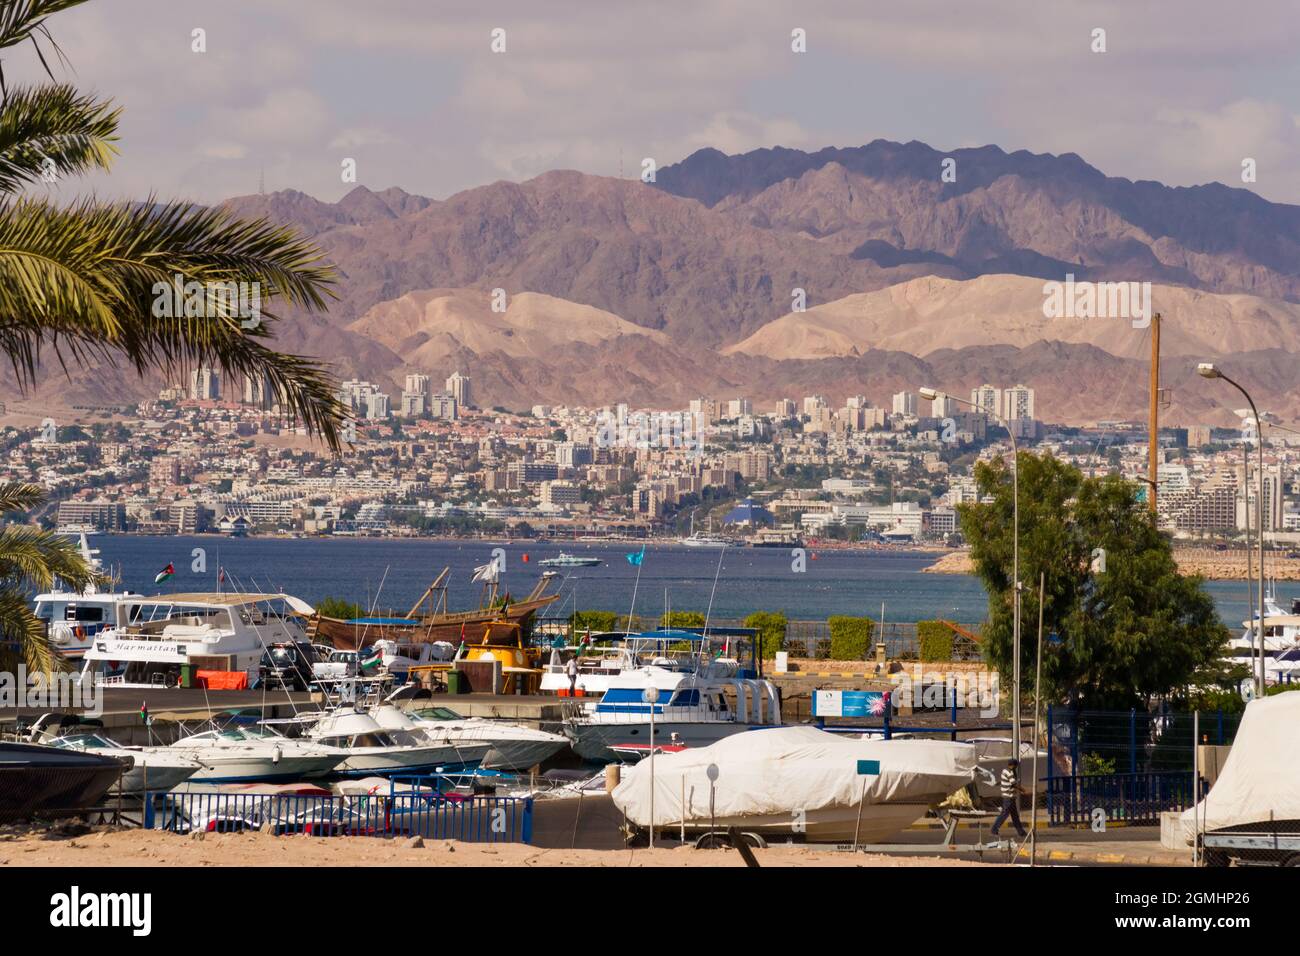 AQABA, GIORDANIA - 6 NOVEMBRE: Una vista attraverso il golfo di Aqaba alla trafficata città di confine israeliana Eilat al Mar Rosso, una popolare destinazione turistica. Novembre Foto Stock